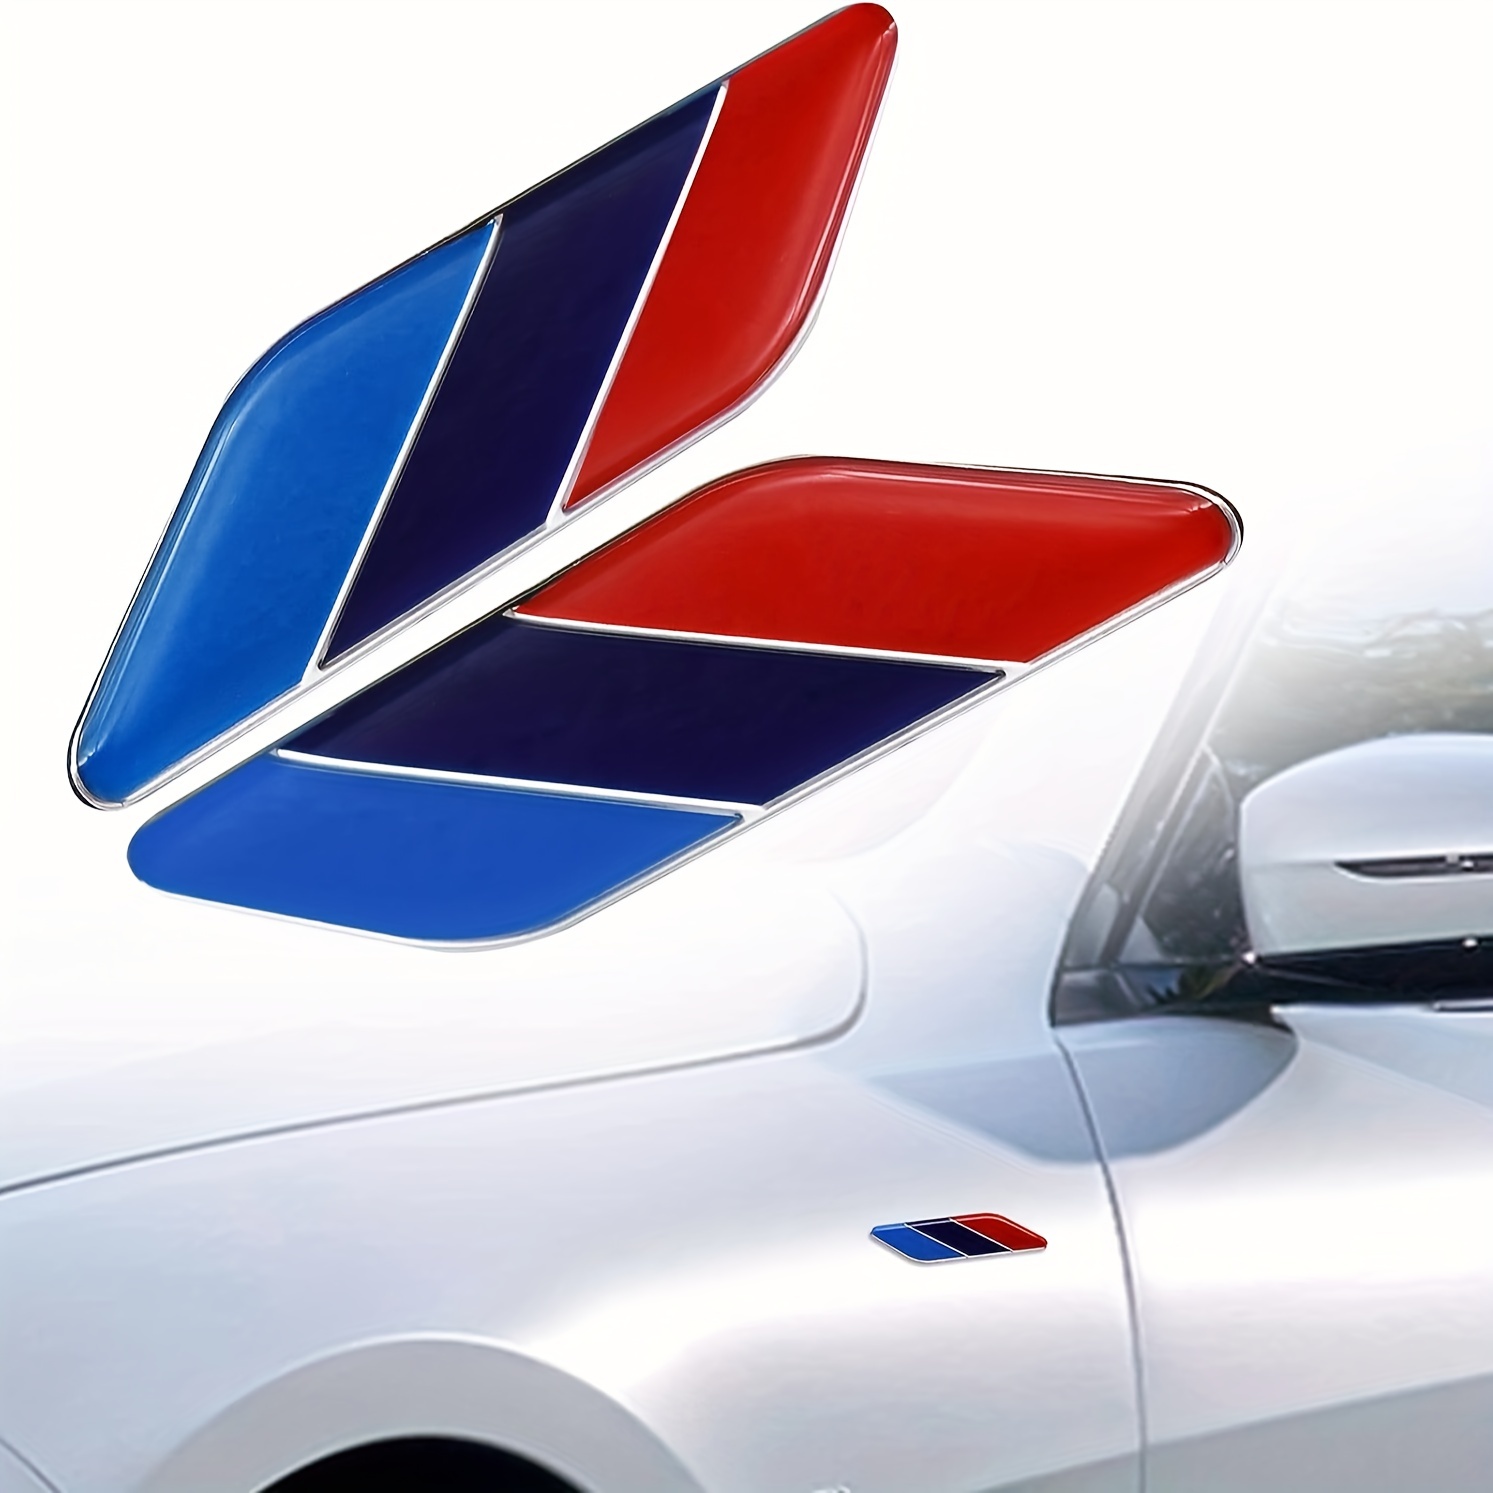  BMW emblema original redondo de 82 mm para todos los modelos  excepto Z4. Apto para la mayoría de cajuelas. Vea la descripción. :  Automotriz